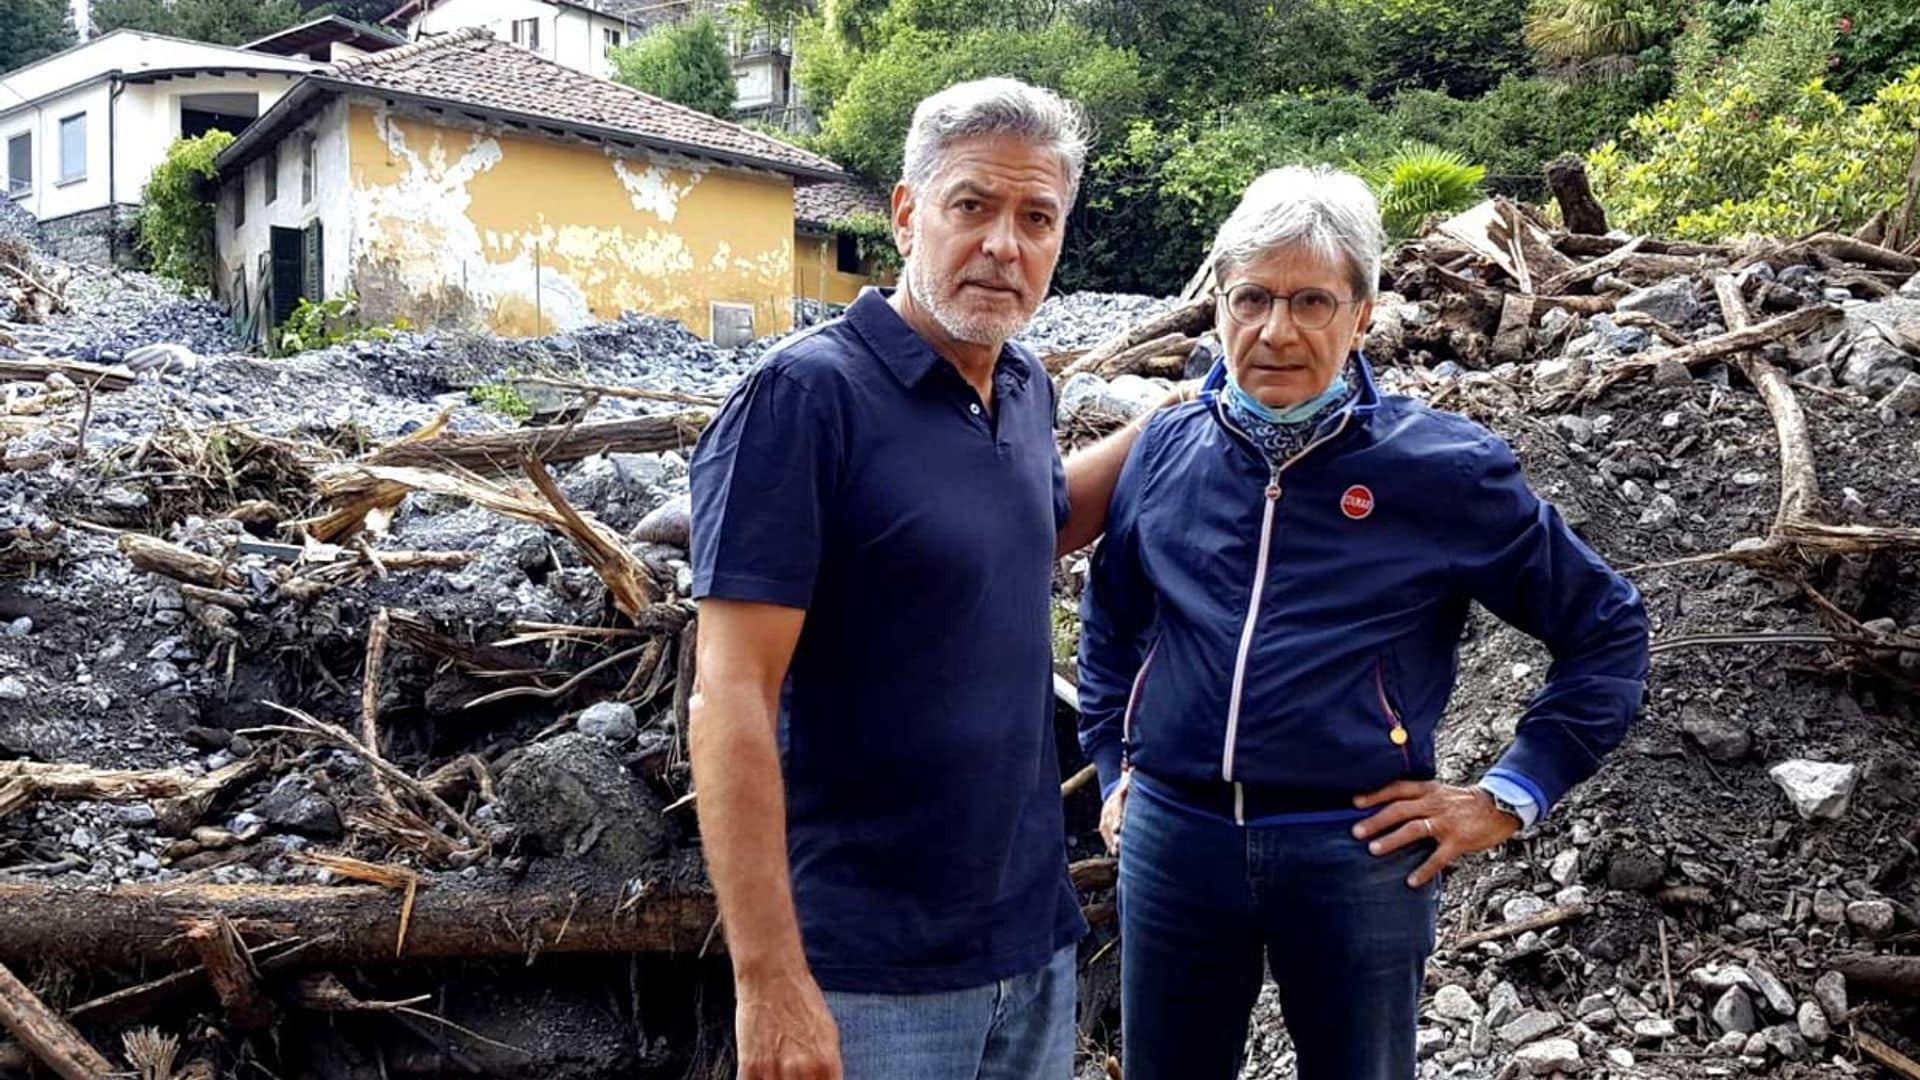 George Clooney recorre los lugares afectados por las desastrosas inundaciones en el Lago Como y ayuda a las víctimas